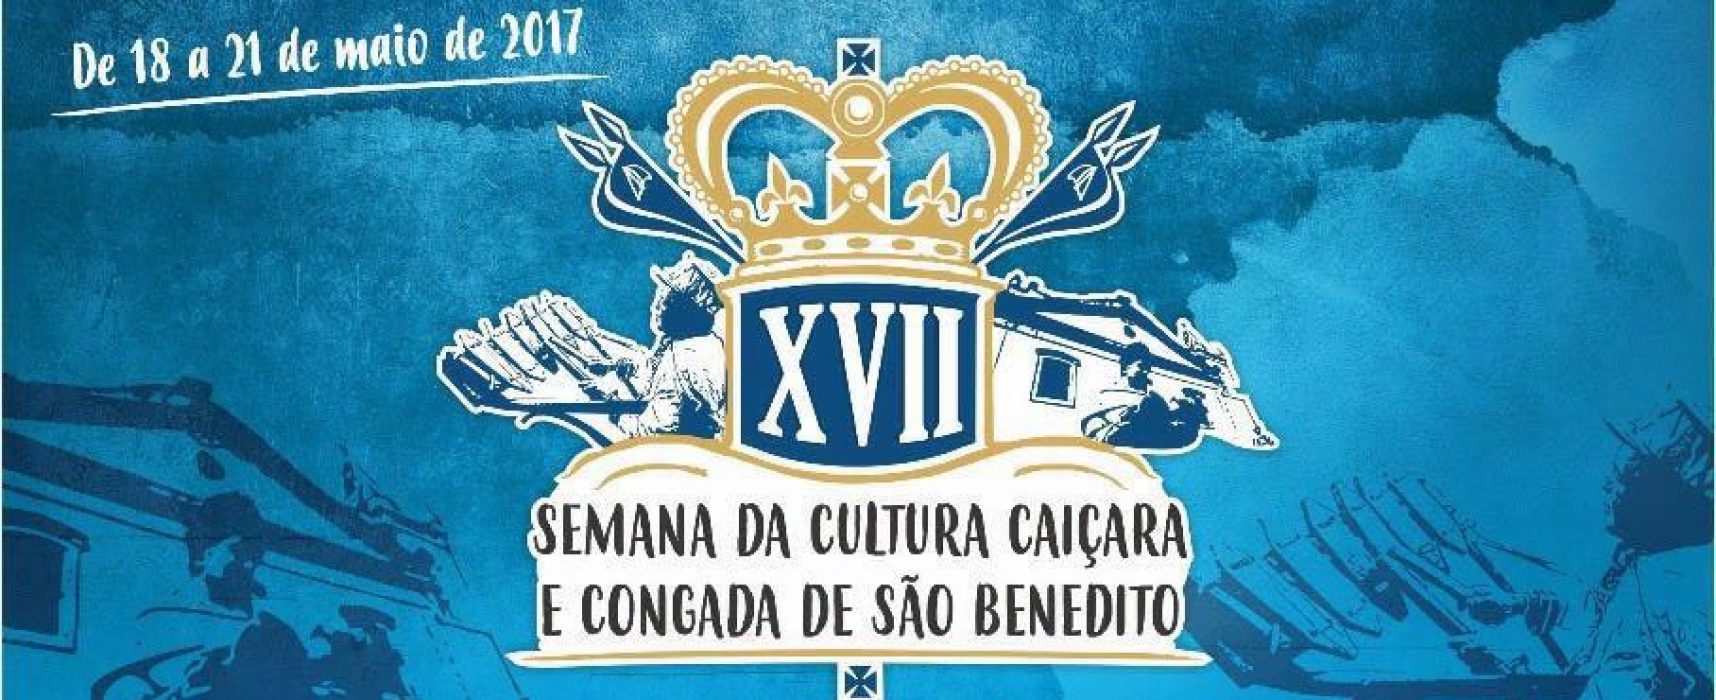 Programação intensa para a XVII Semana da Congada de São Benedito e Cultura Caiçara